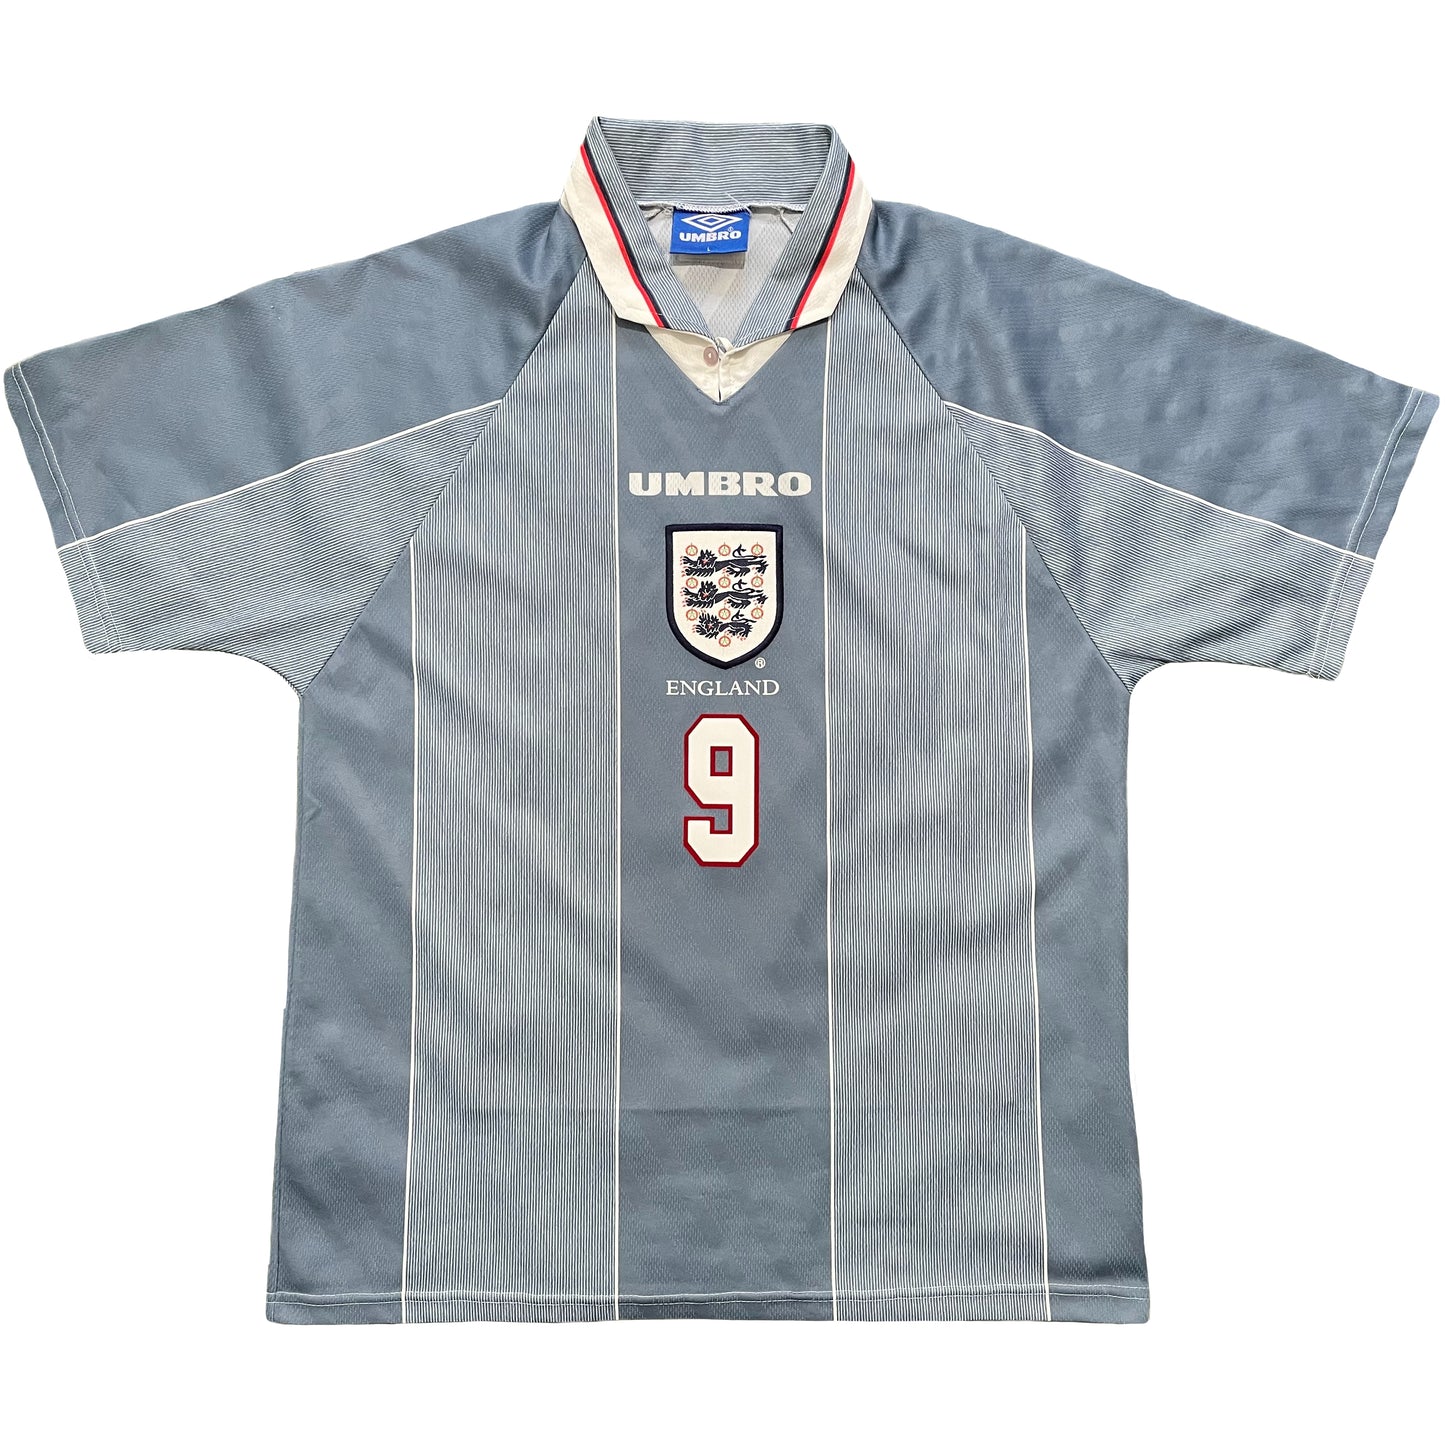 1996 Euro England away shirt #9 Shearer (L)